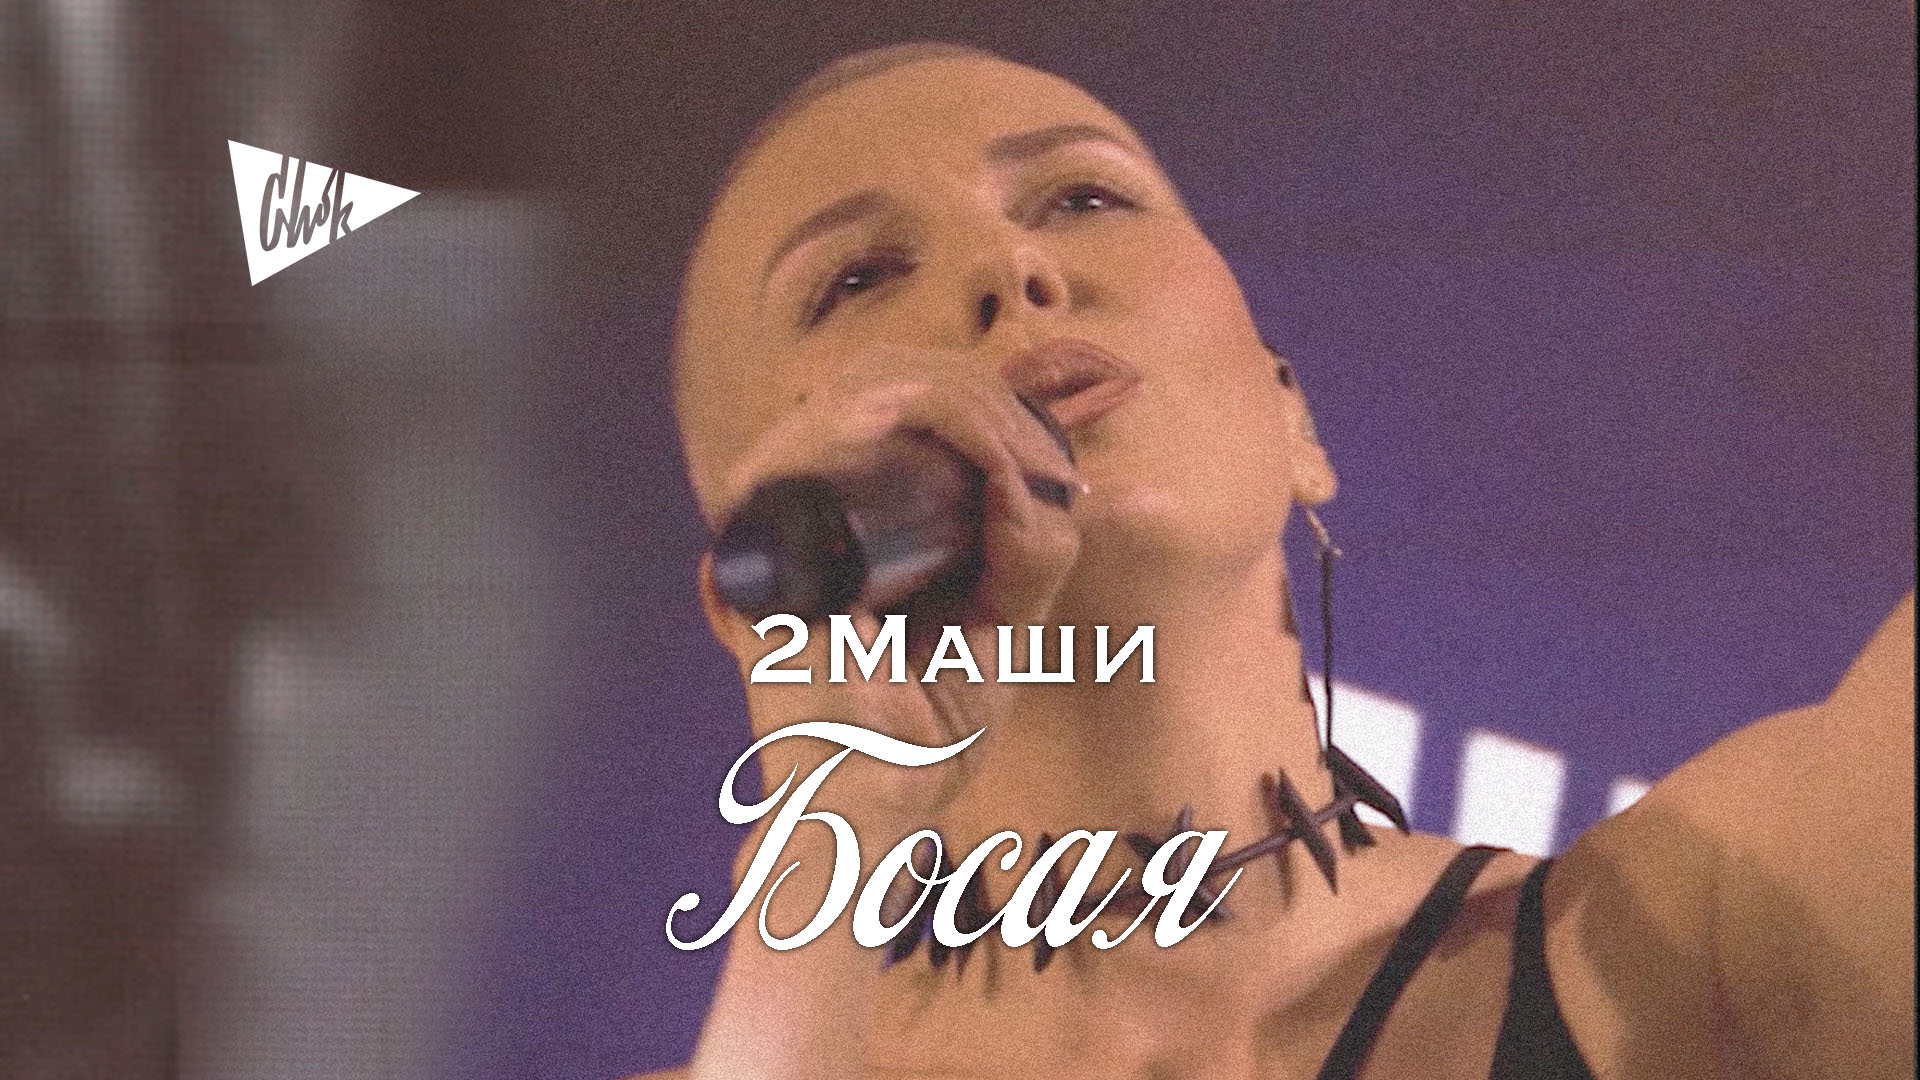 2Маши - Босая (Chok cover)